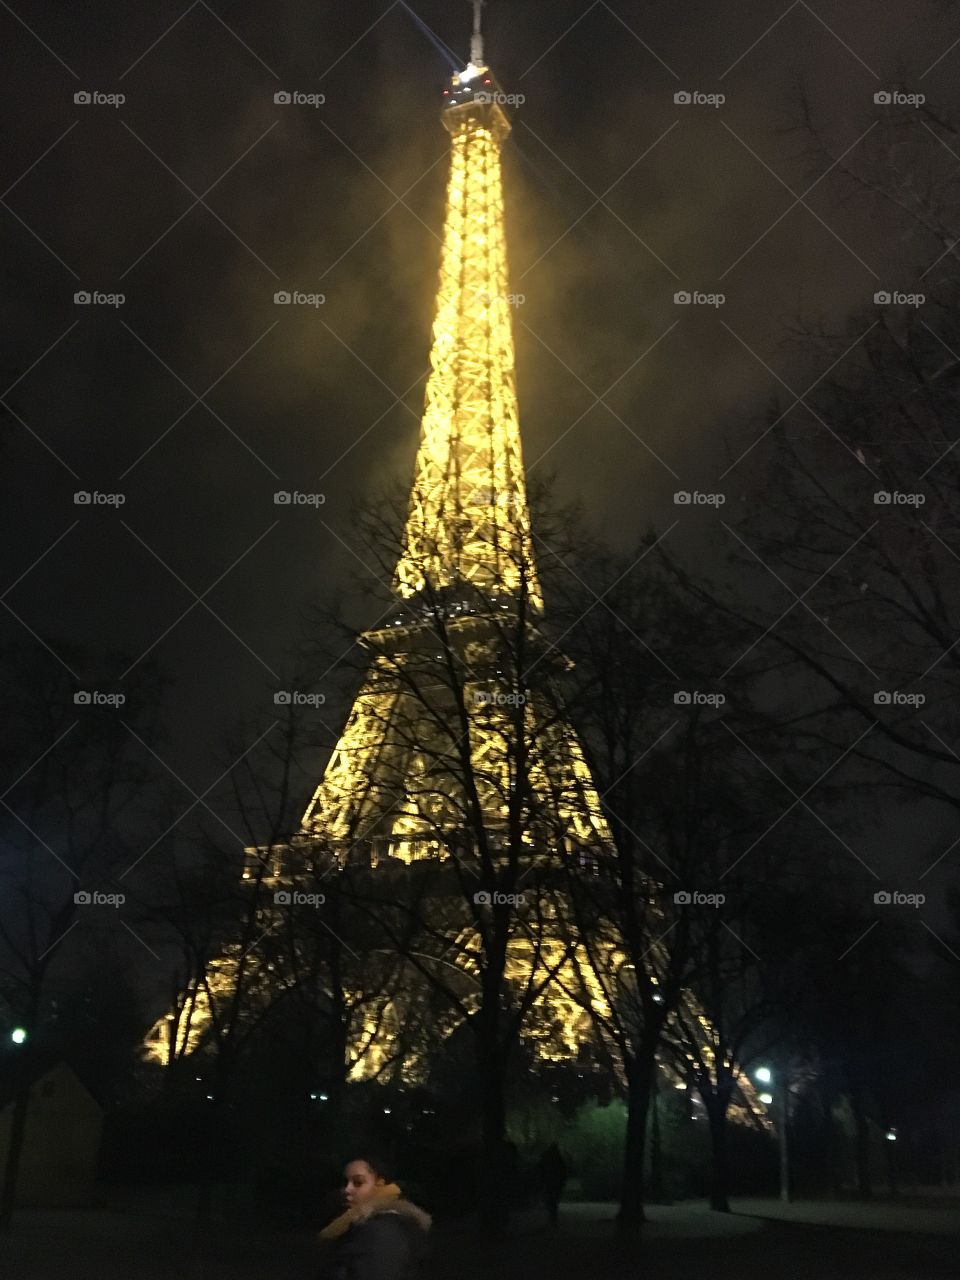 Eiffel Tower in the foggy night